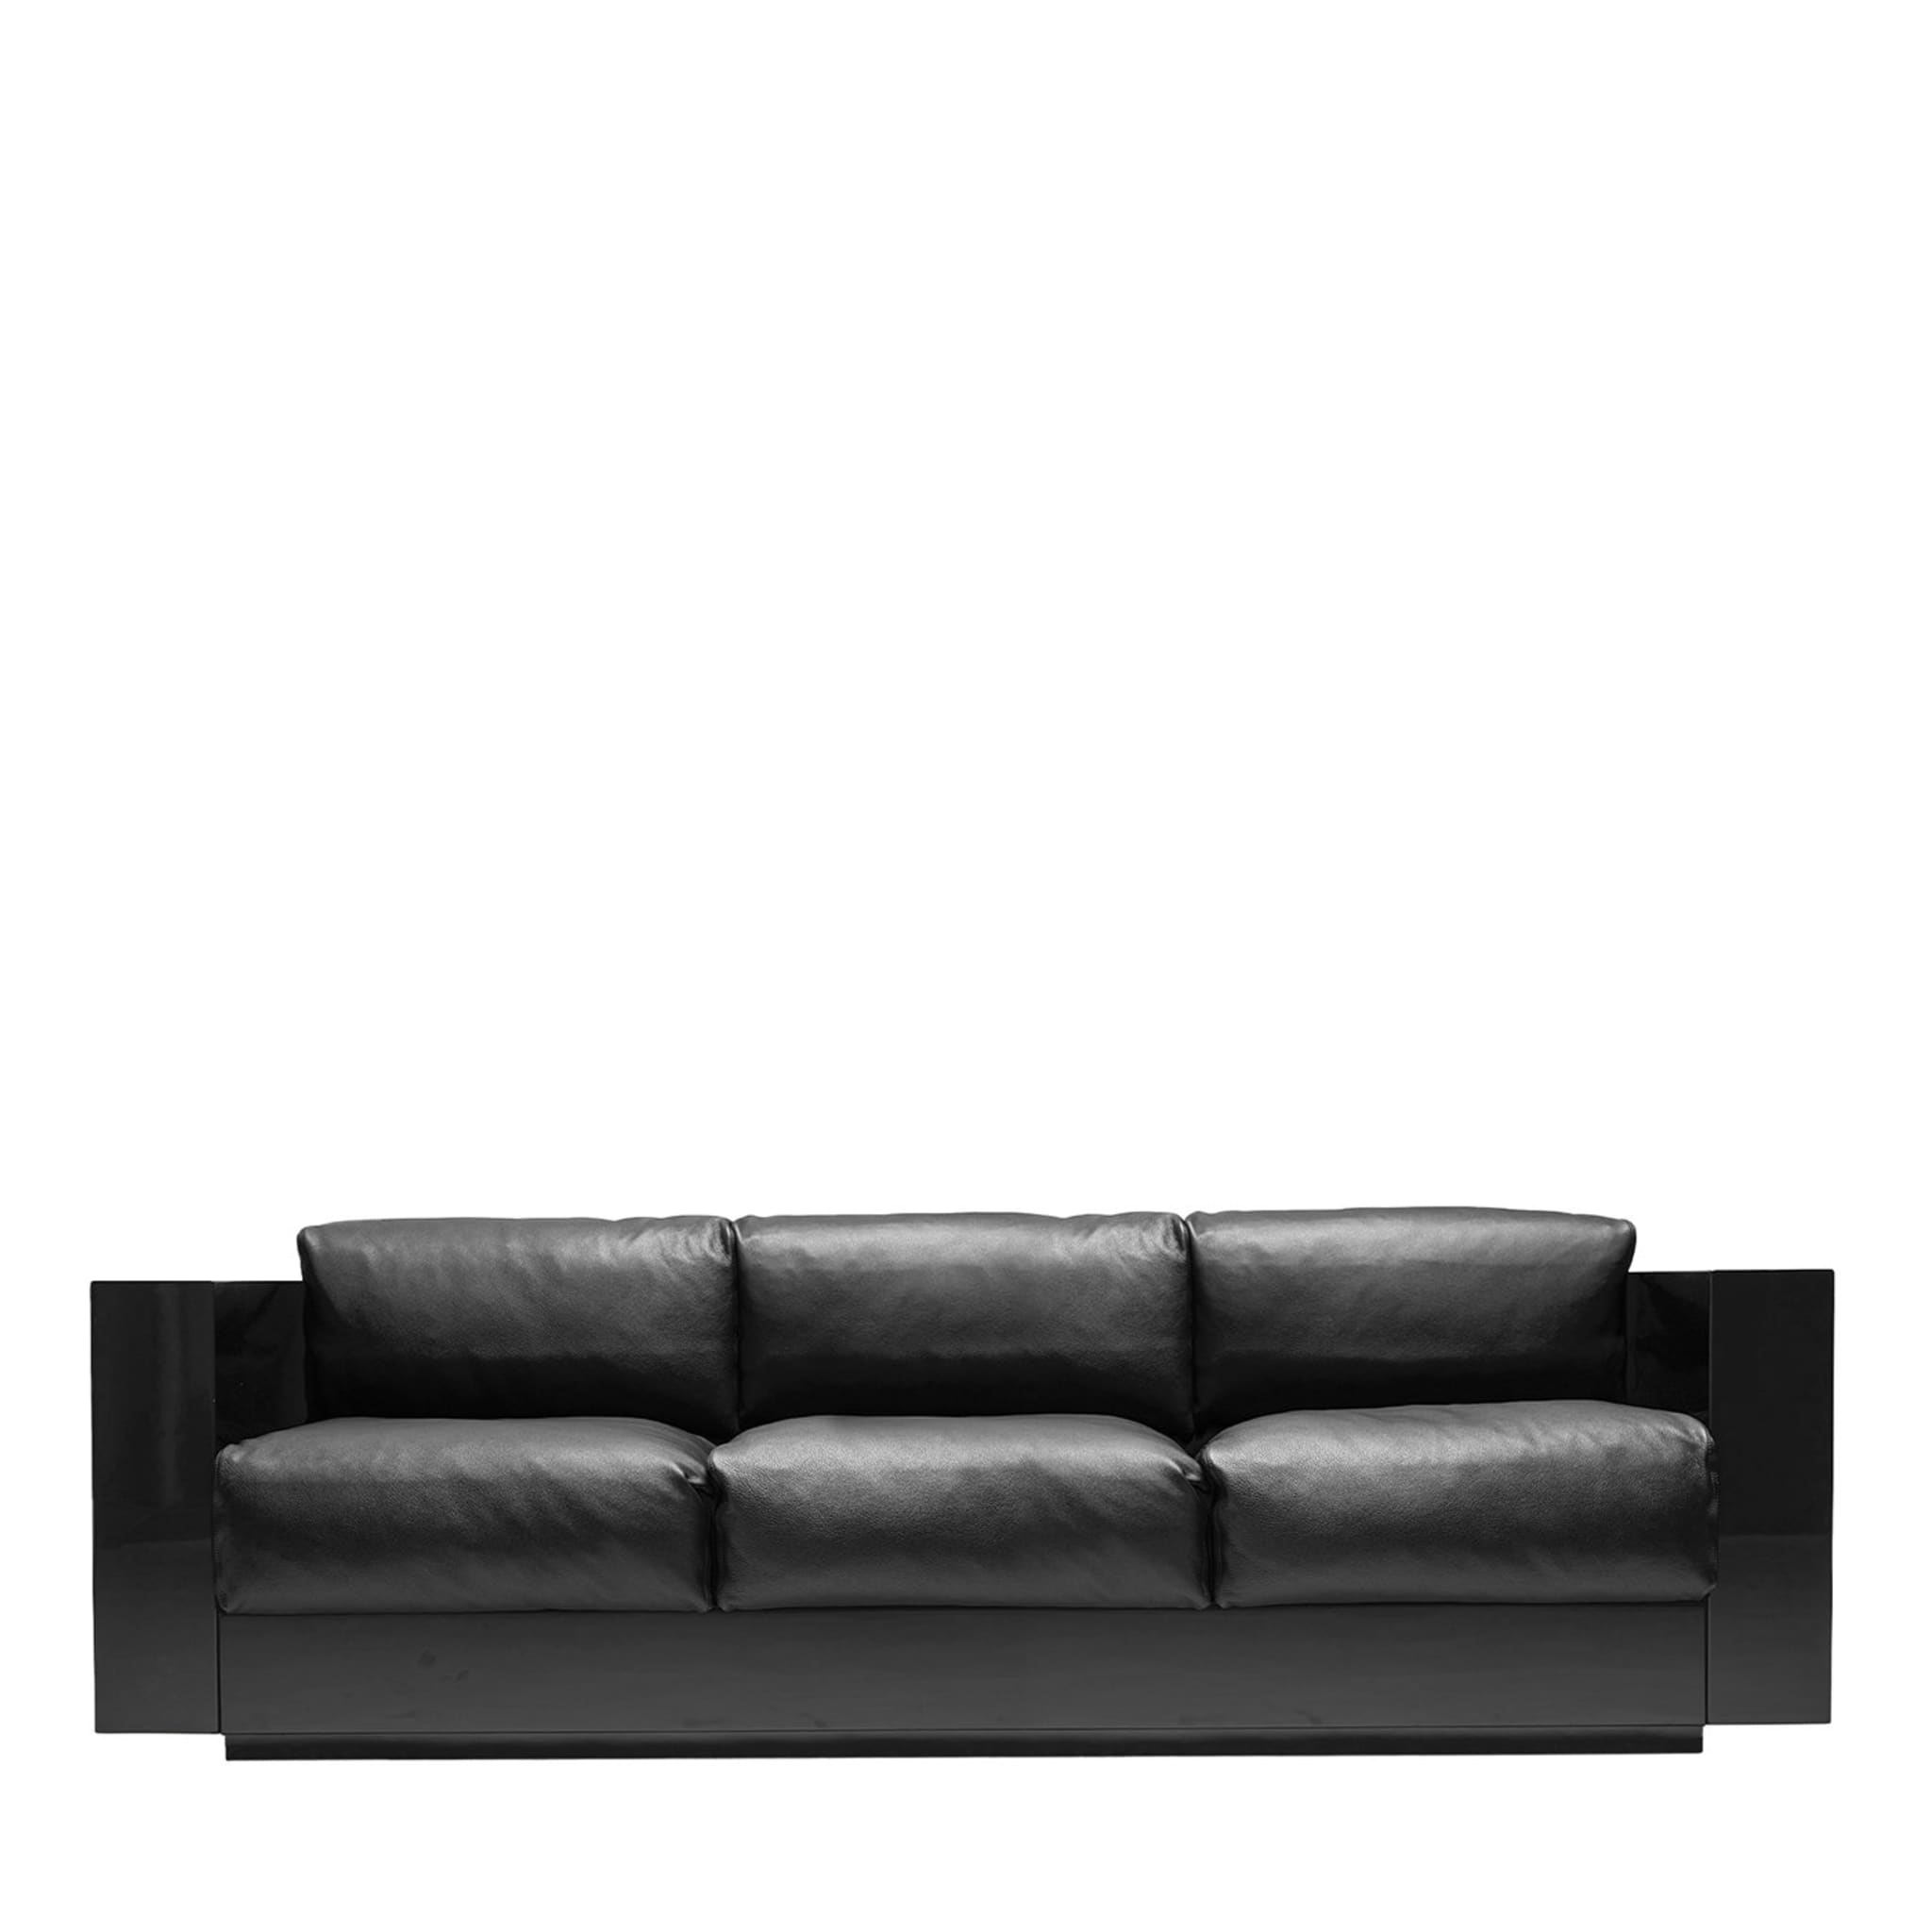 Saratoga Schwarzes 3-sitziges Sofa von Lella und Massimo Vignelli - Hauptansicht